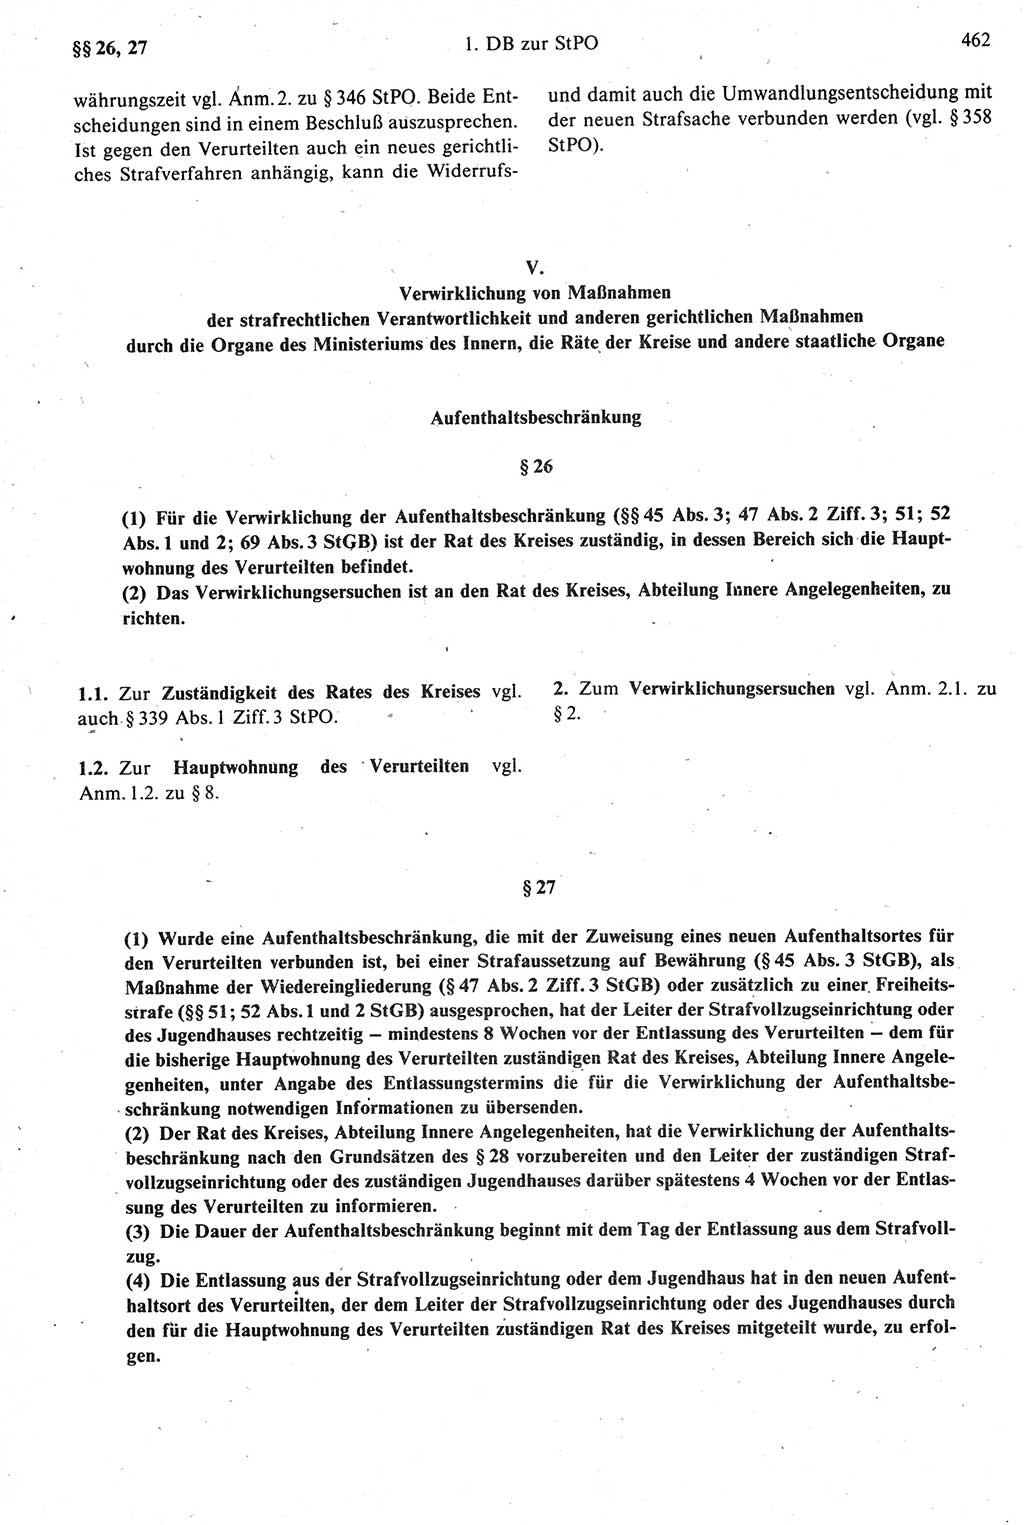 Strafprozeßrecht der DDR [Deutsche Demokratische Republik], Kommentar zur Strafprozeßordnung (StPO) 1987, Seite 462 (Strafprozeßr. DDR Komm. StPO 1987, S. 462)